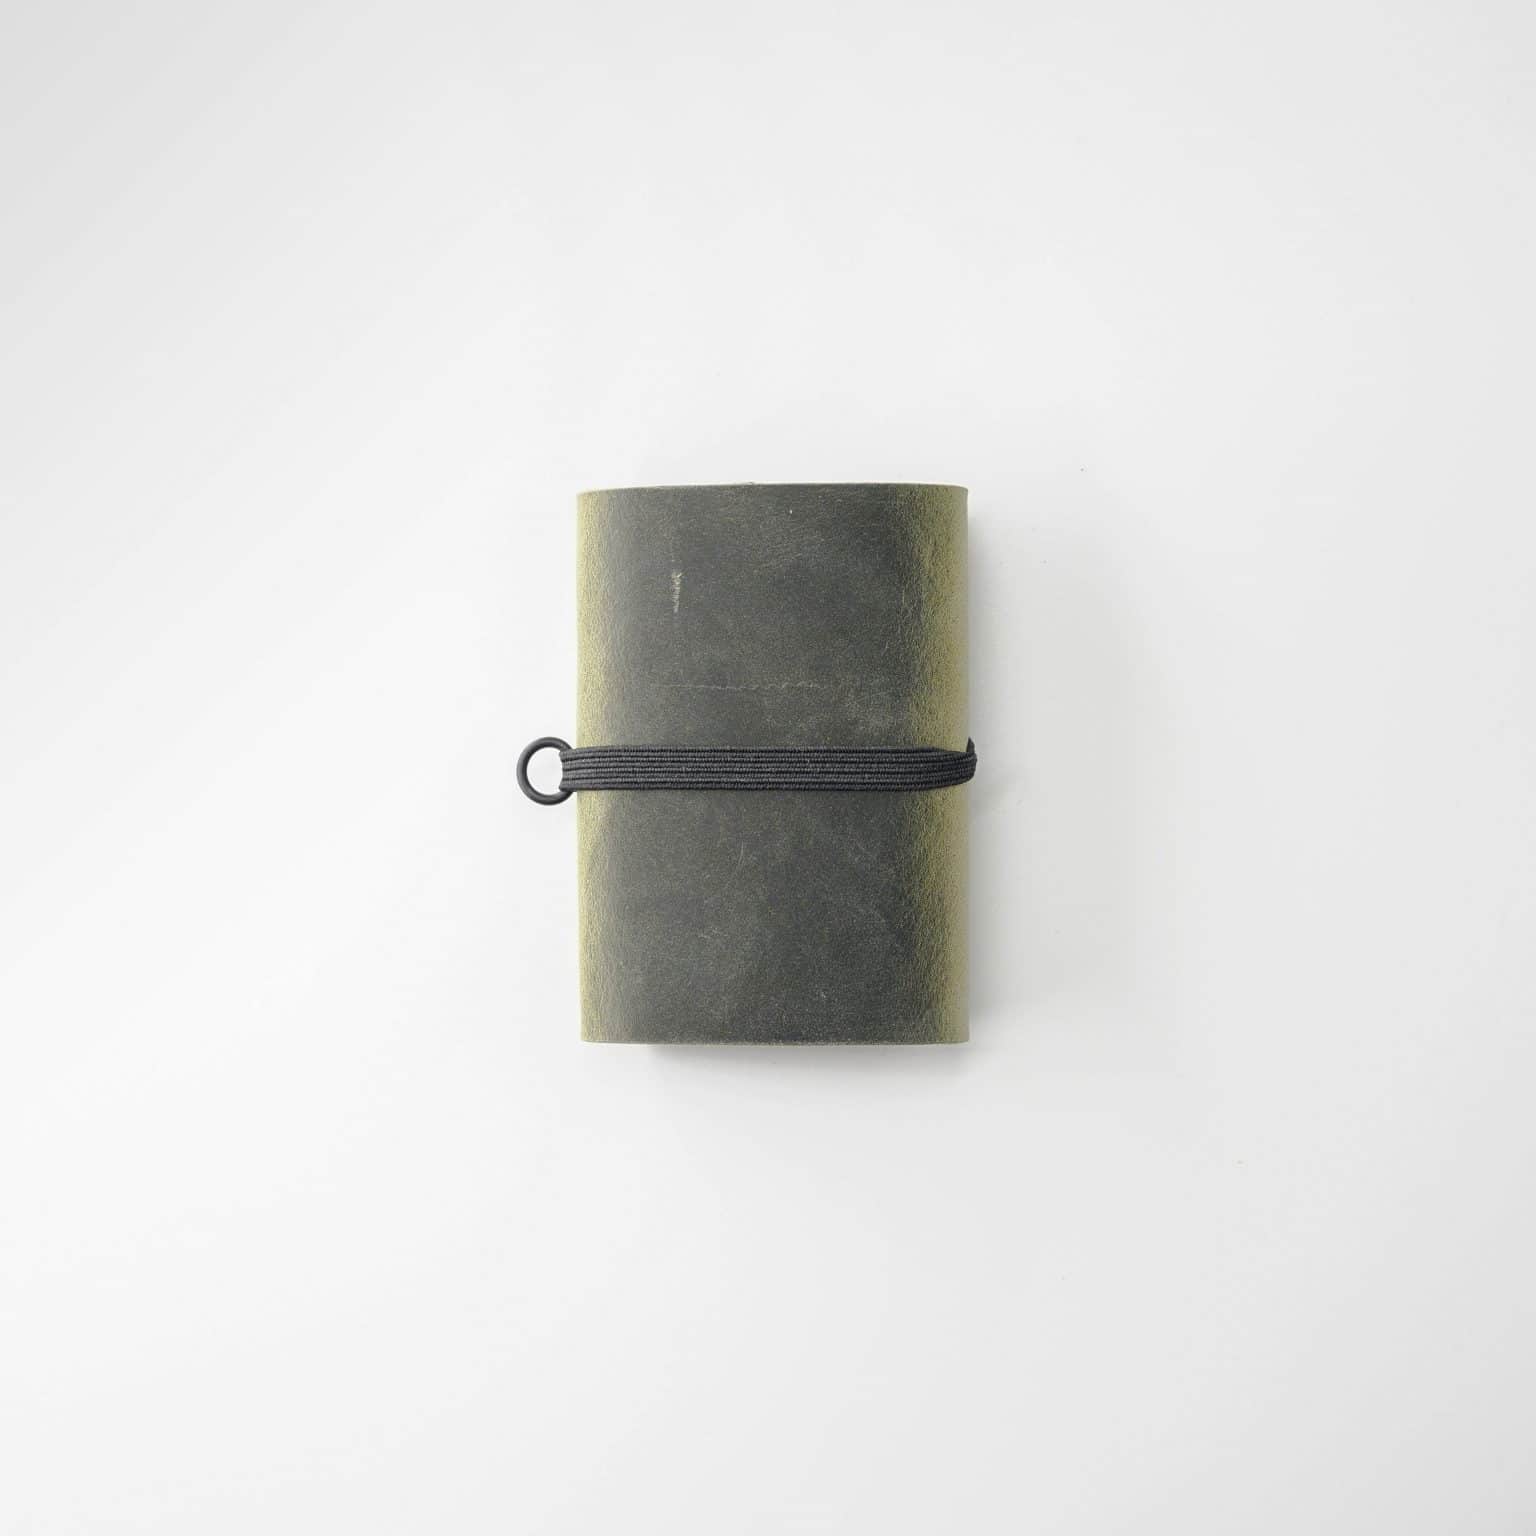 Hébergement de haute qualité minimalist portefeuille avec stockage sécurisé des cartes.